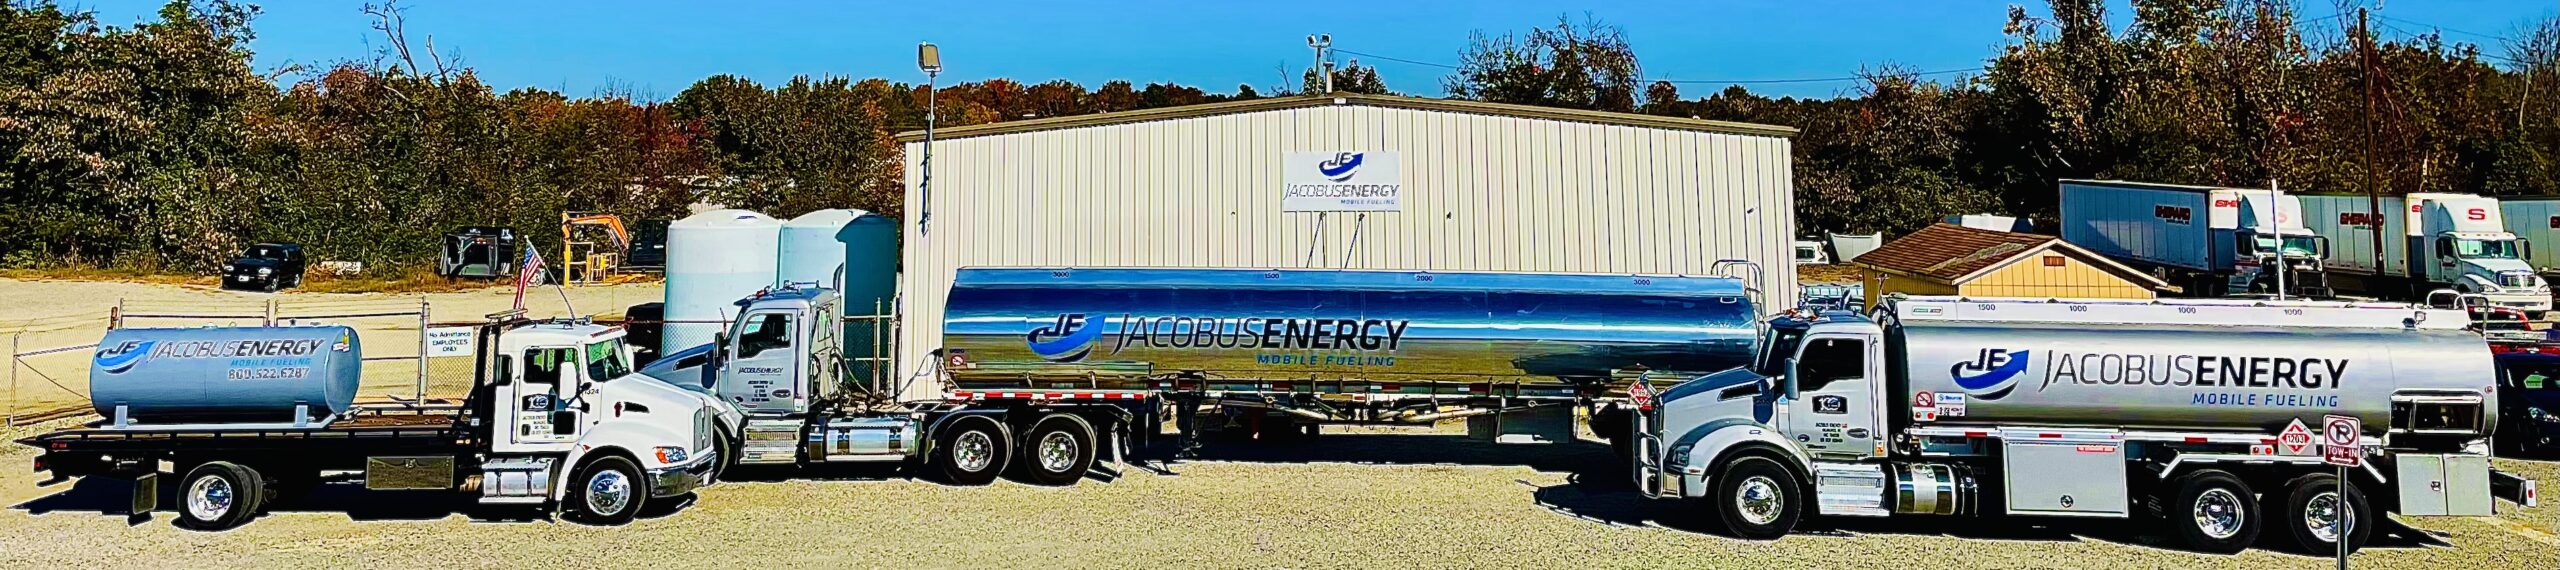 Jacobus Energy fuel truck fleet